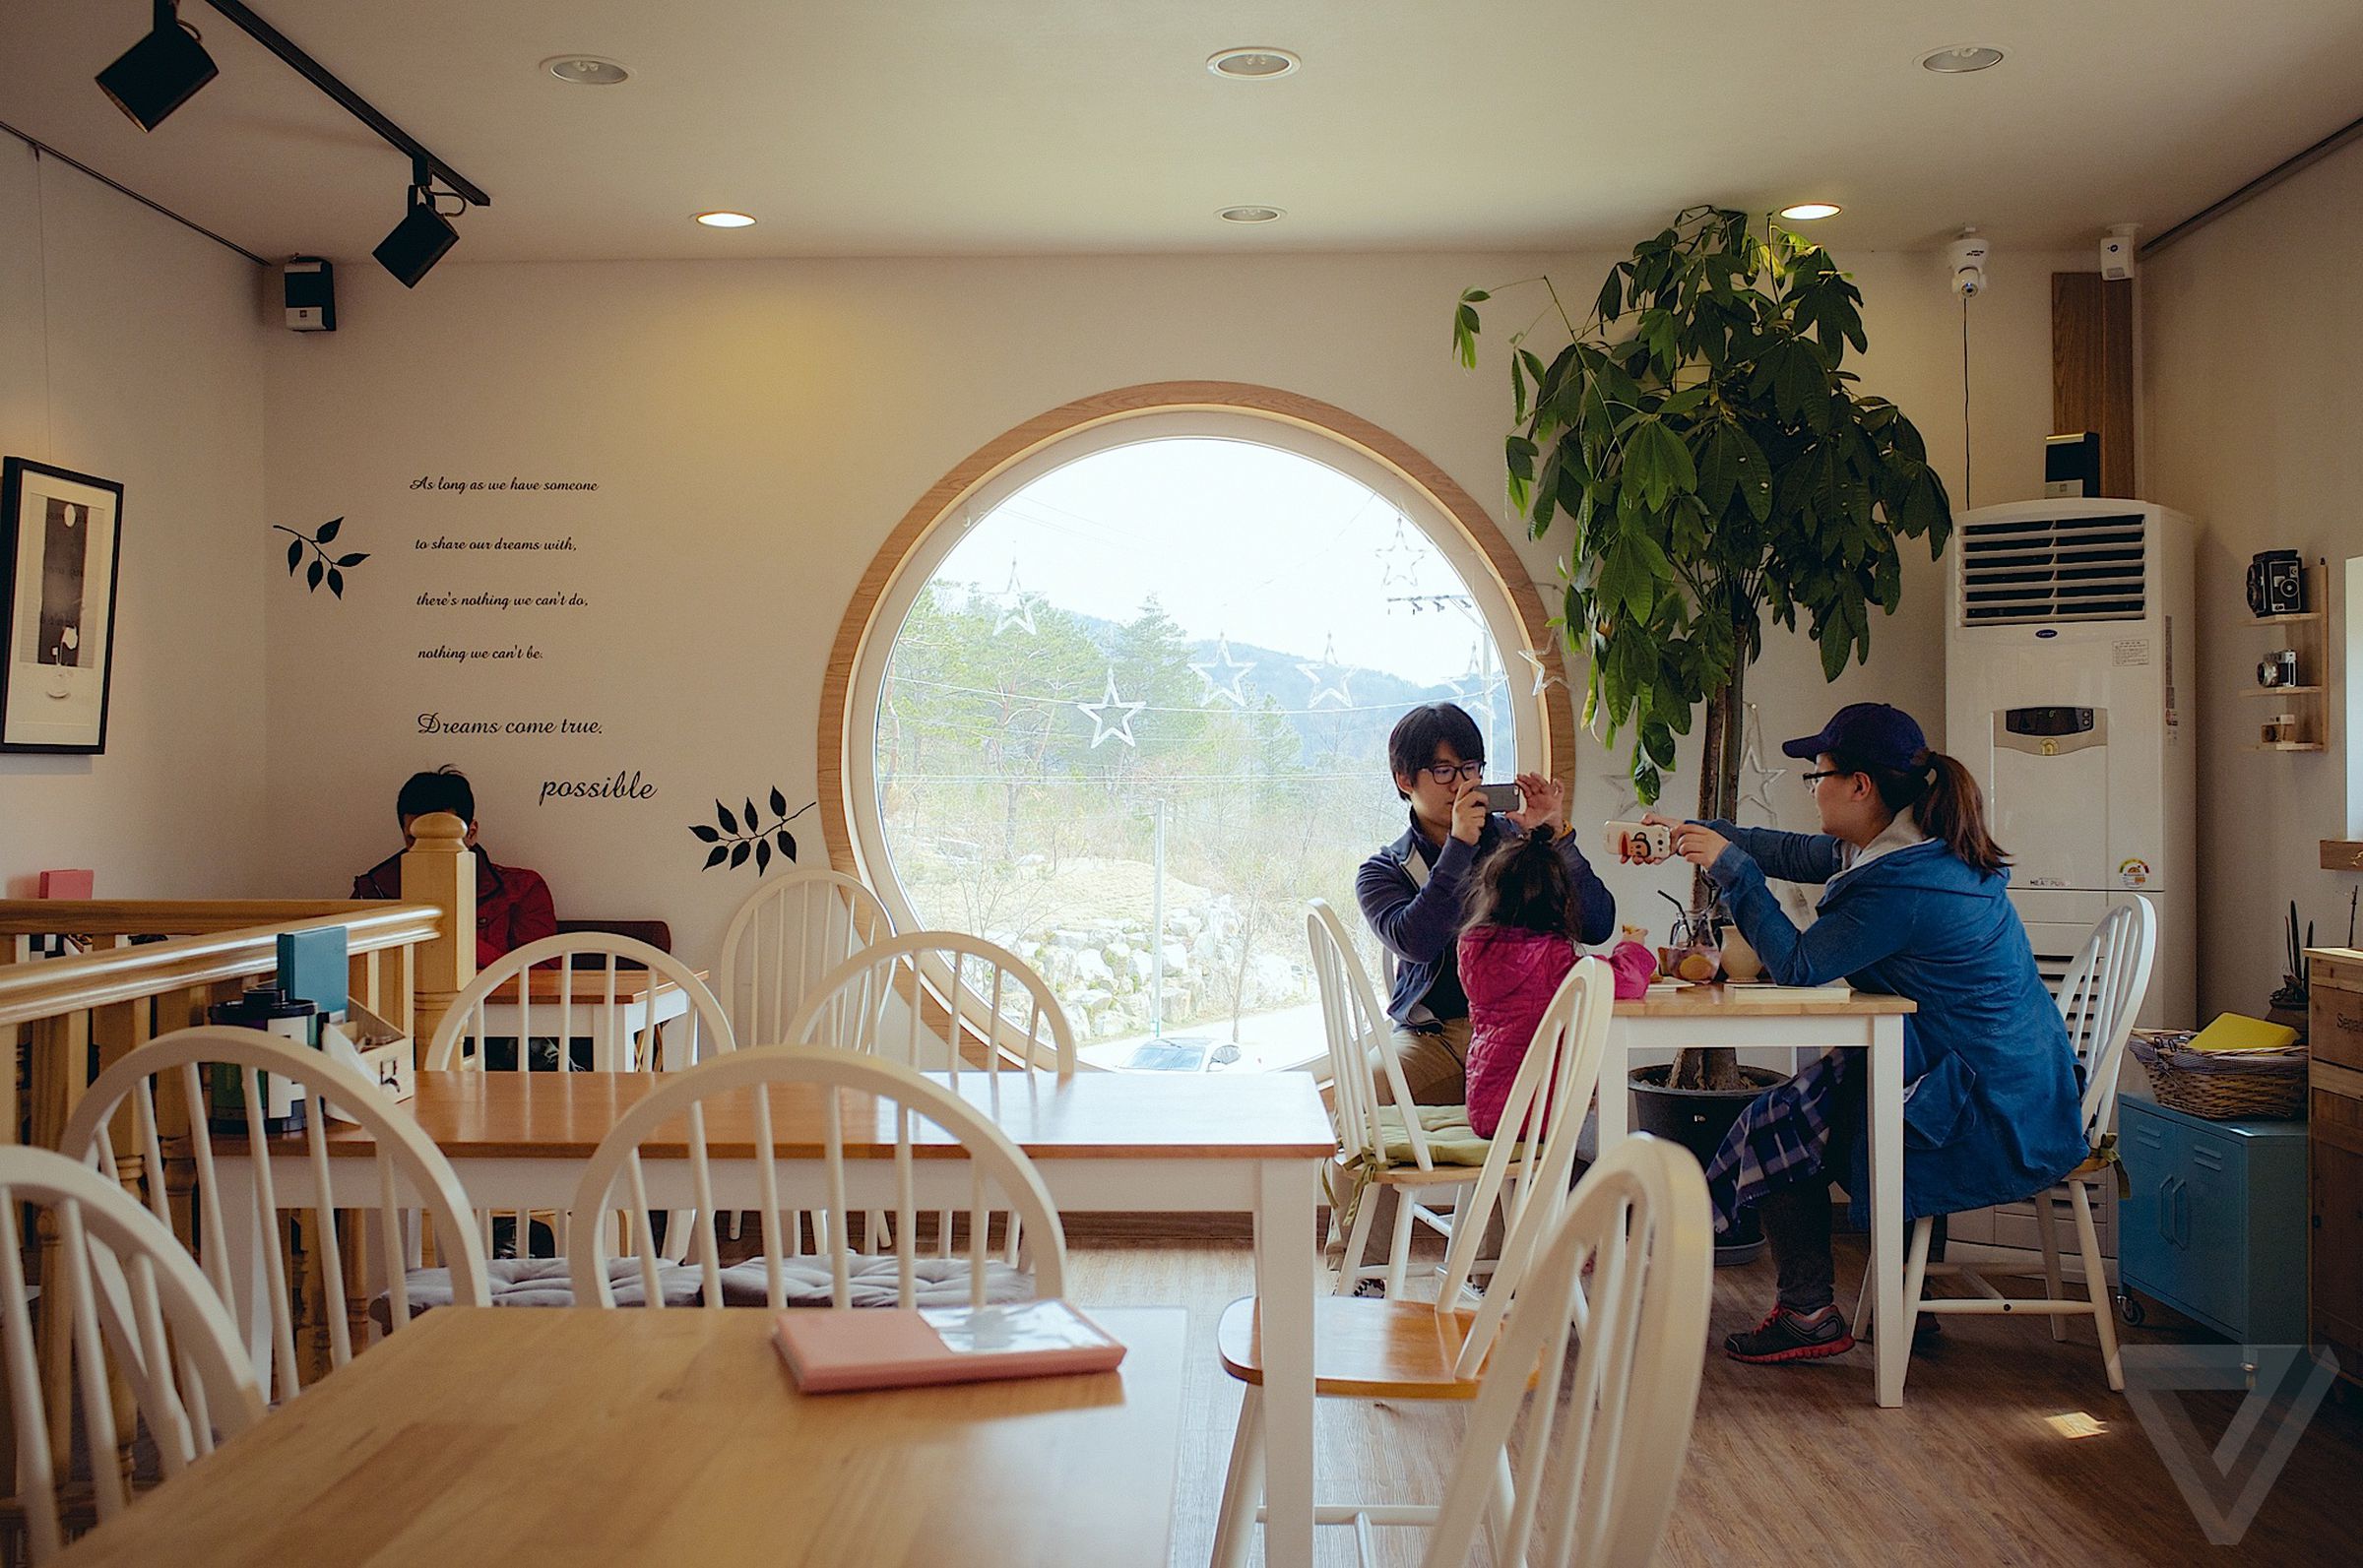 Photos from South Korea's Dreamy Camera Cafe